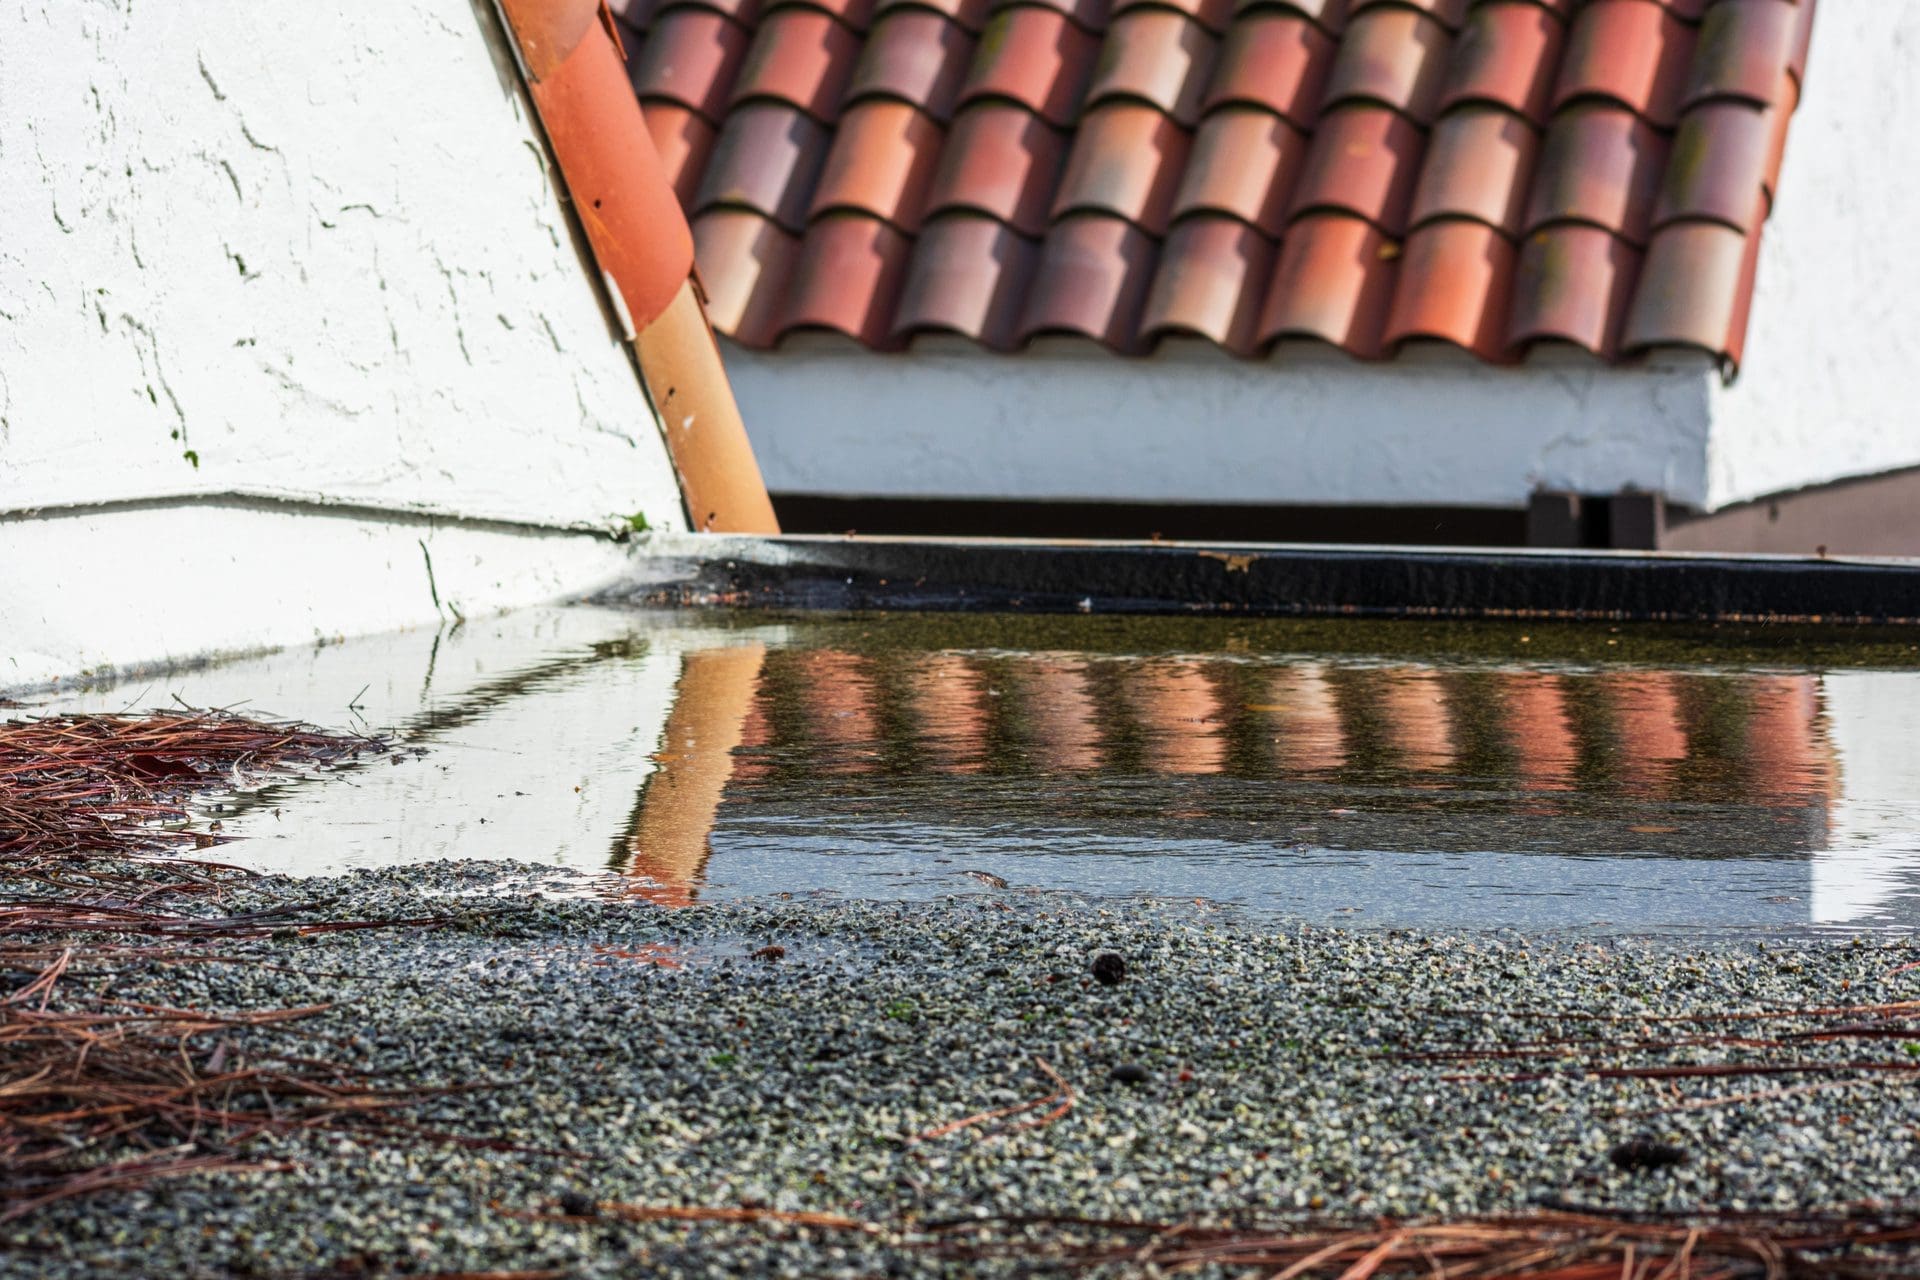 Flachdach undicht | Zahlt Versicherung Flachdachschäden und in deren Folge entstehende Wasserschäden am/im Haus? (© MichaelVi / stock.adobe.com)